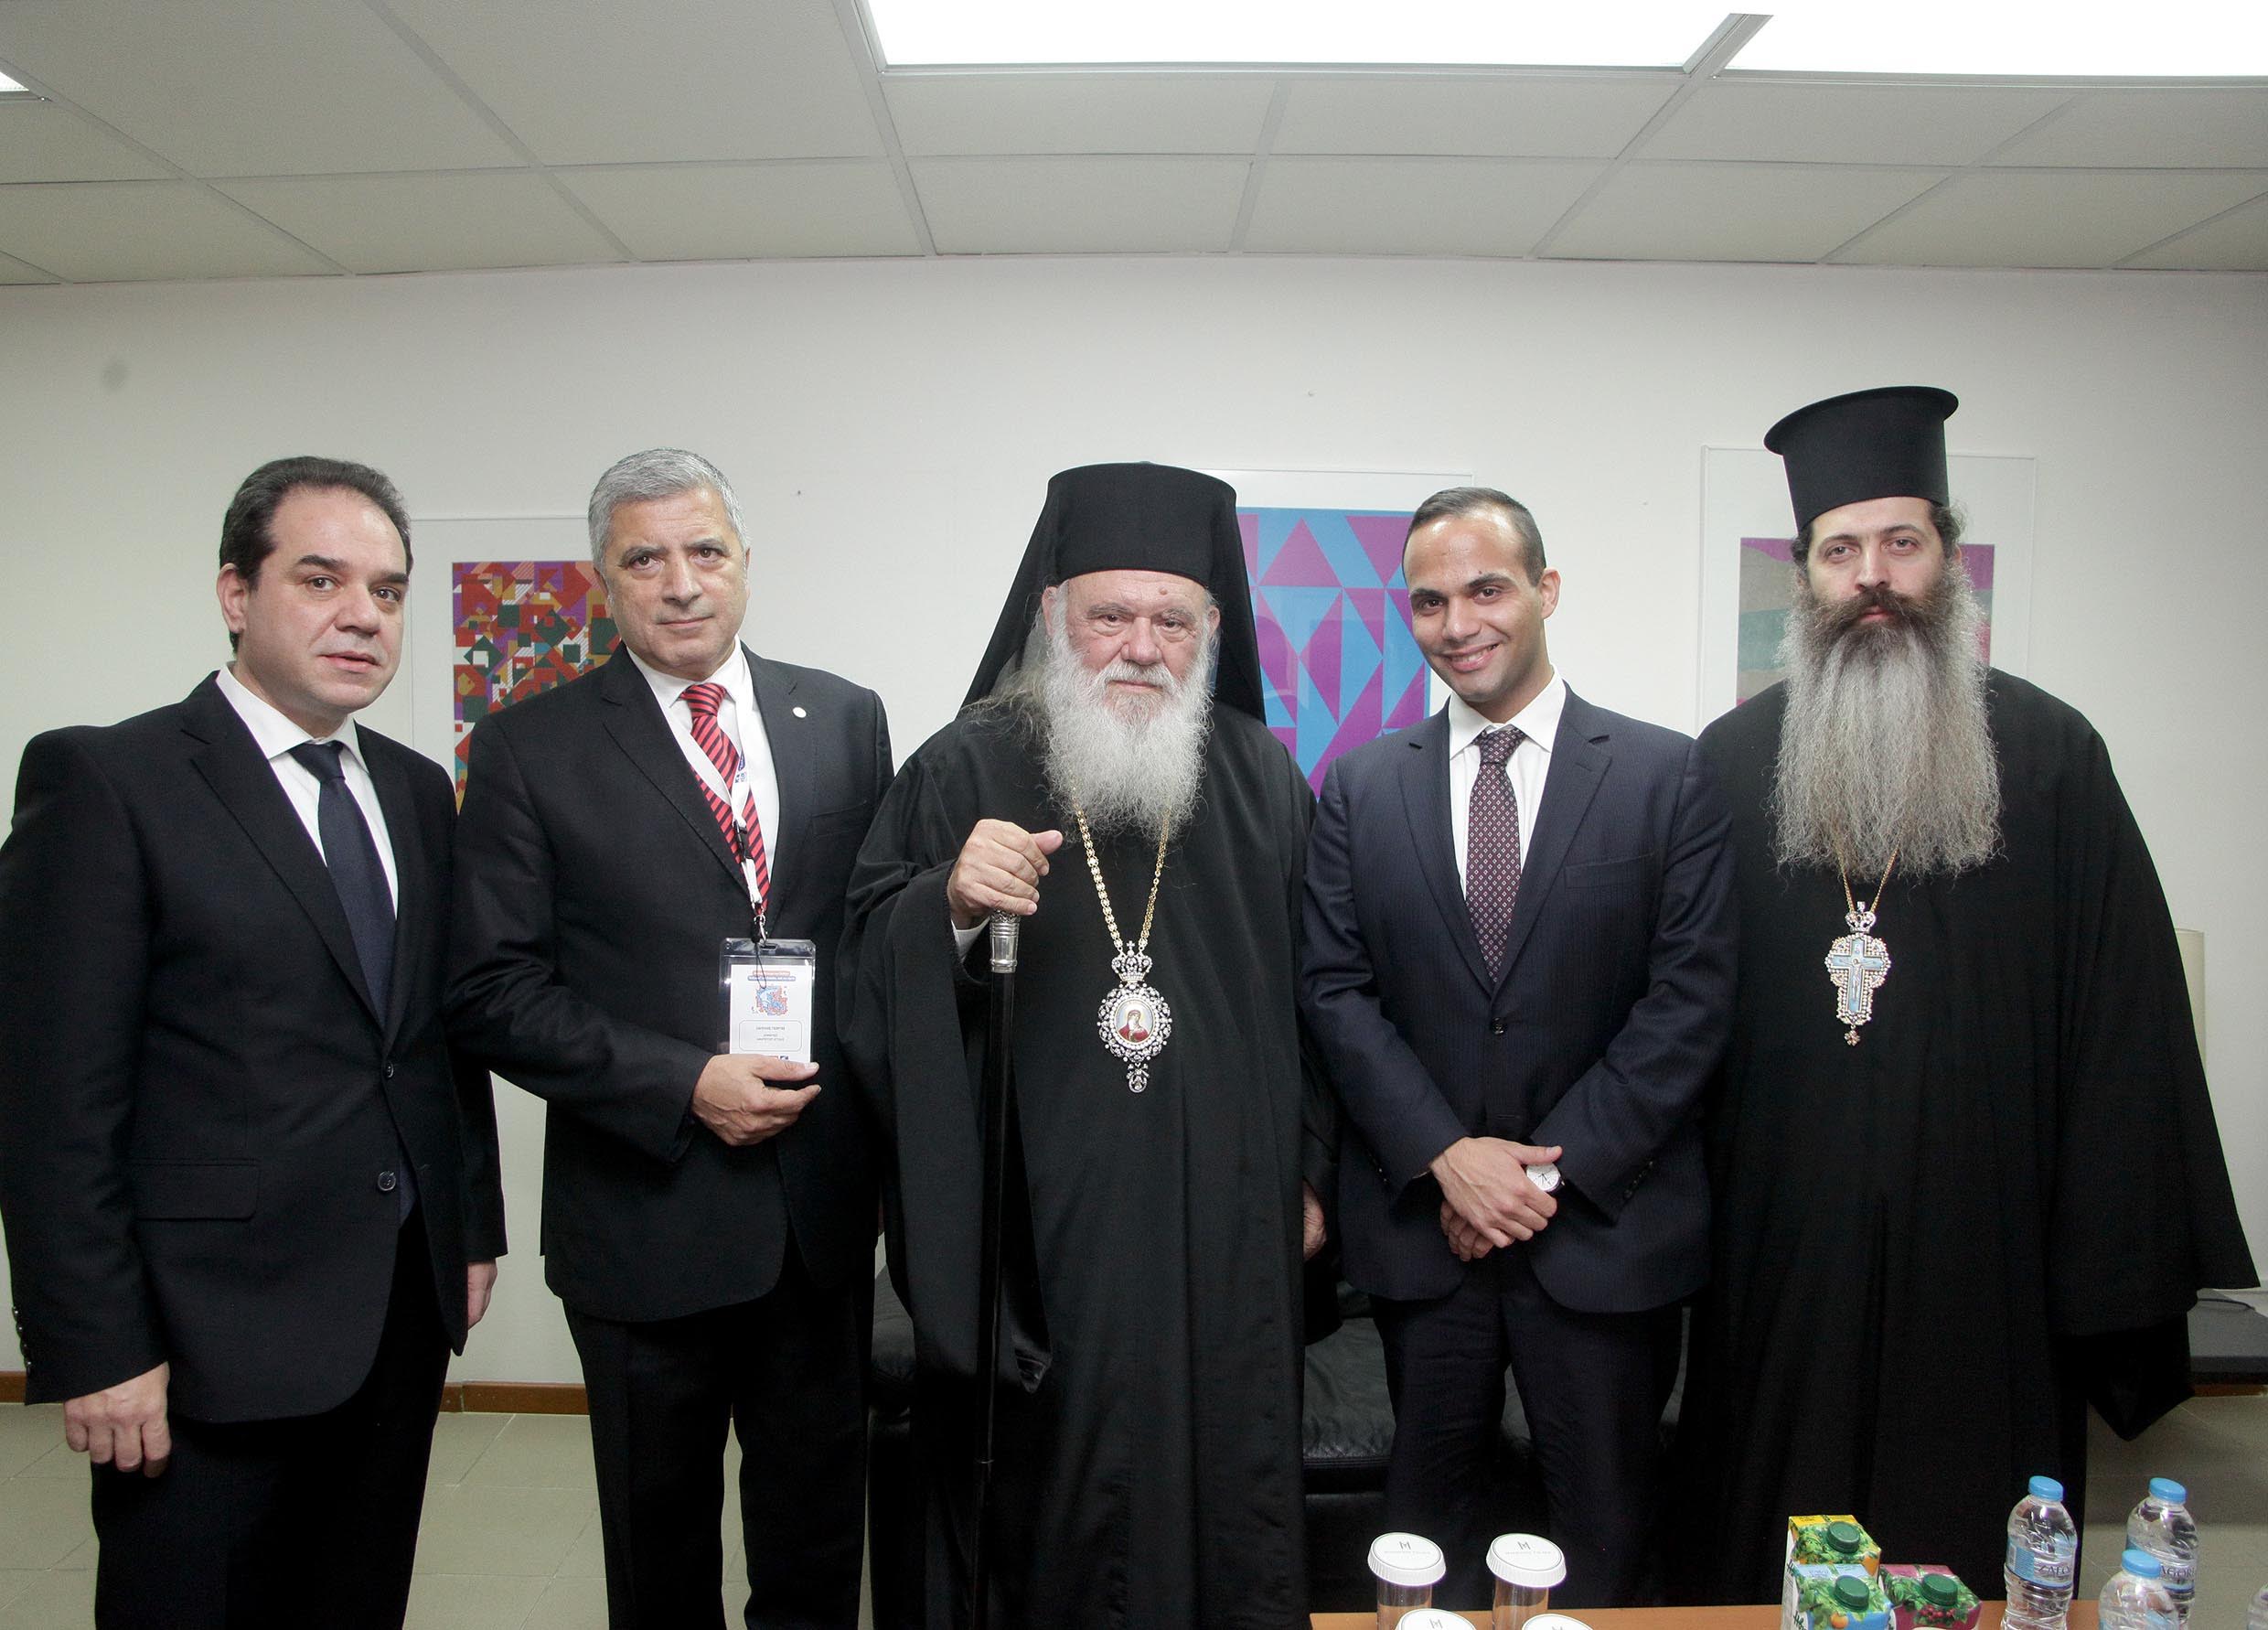 Rencontre de l’archevêque d’Athènes avec le conseiller du futur président des États-Unis Donald Trump